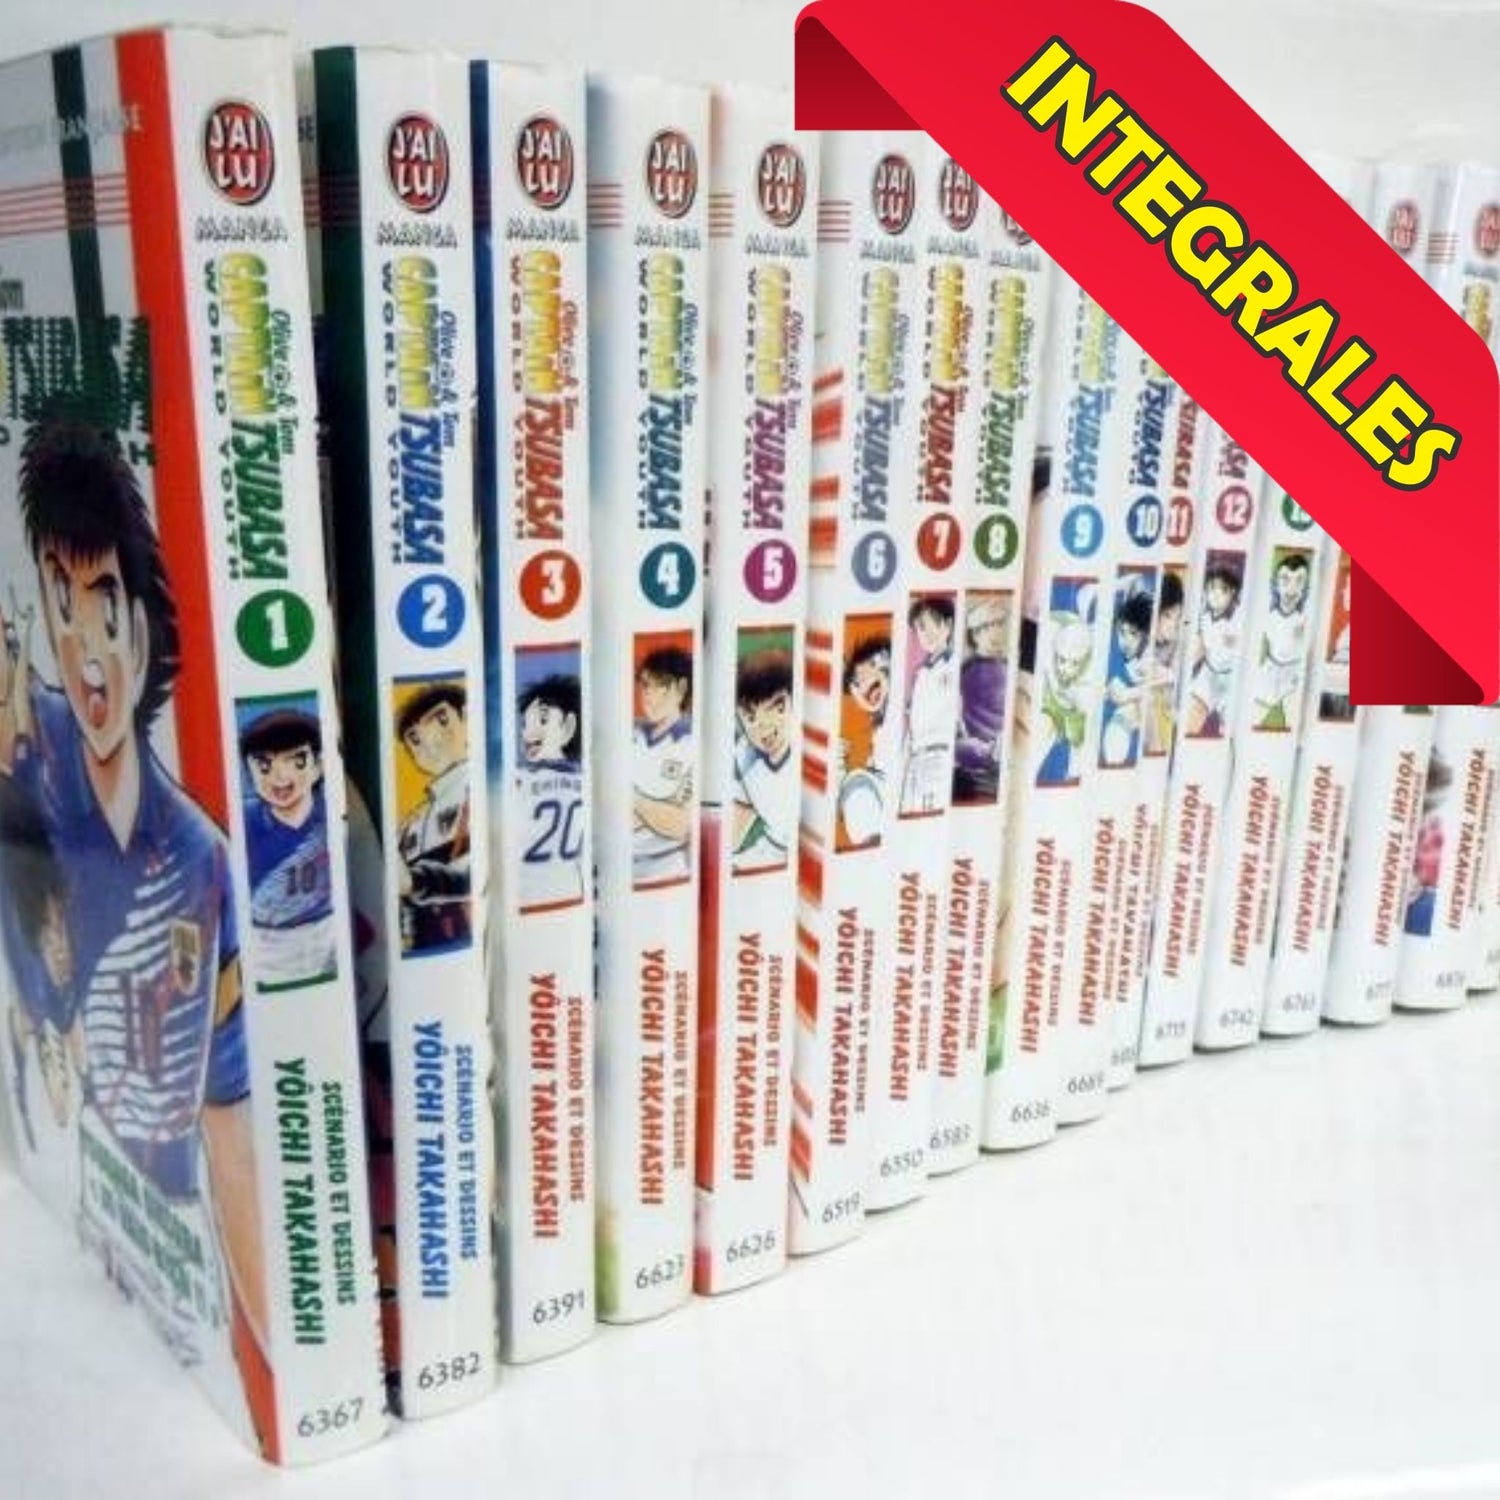 Manga Cash propose une grande variété d'intégrales et de One shot d'occasion de qualité à prix abordables